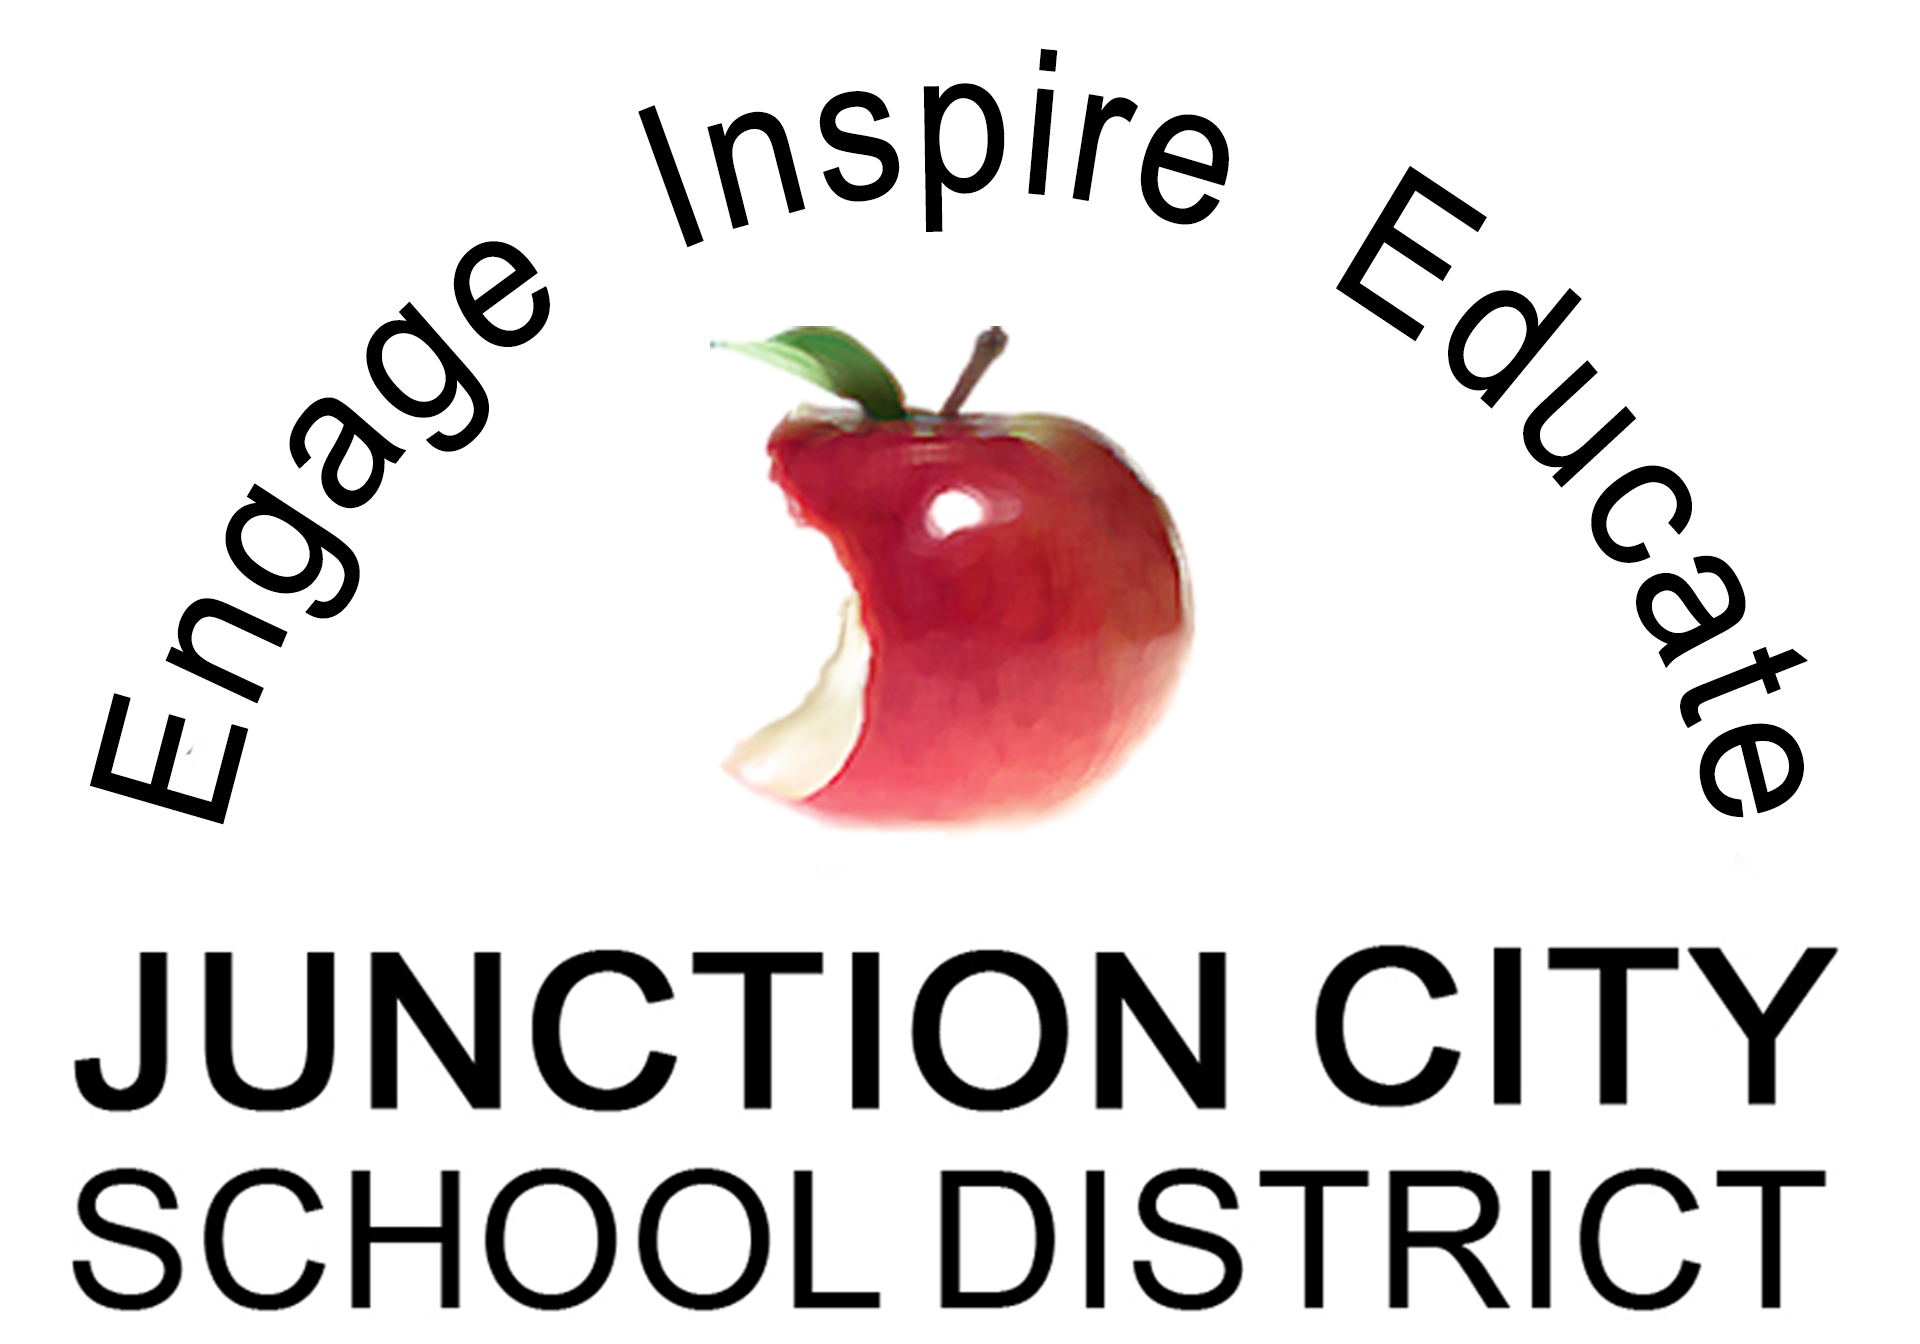 JUNCTION CITY SCHOOL DISTRICT